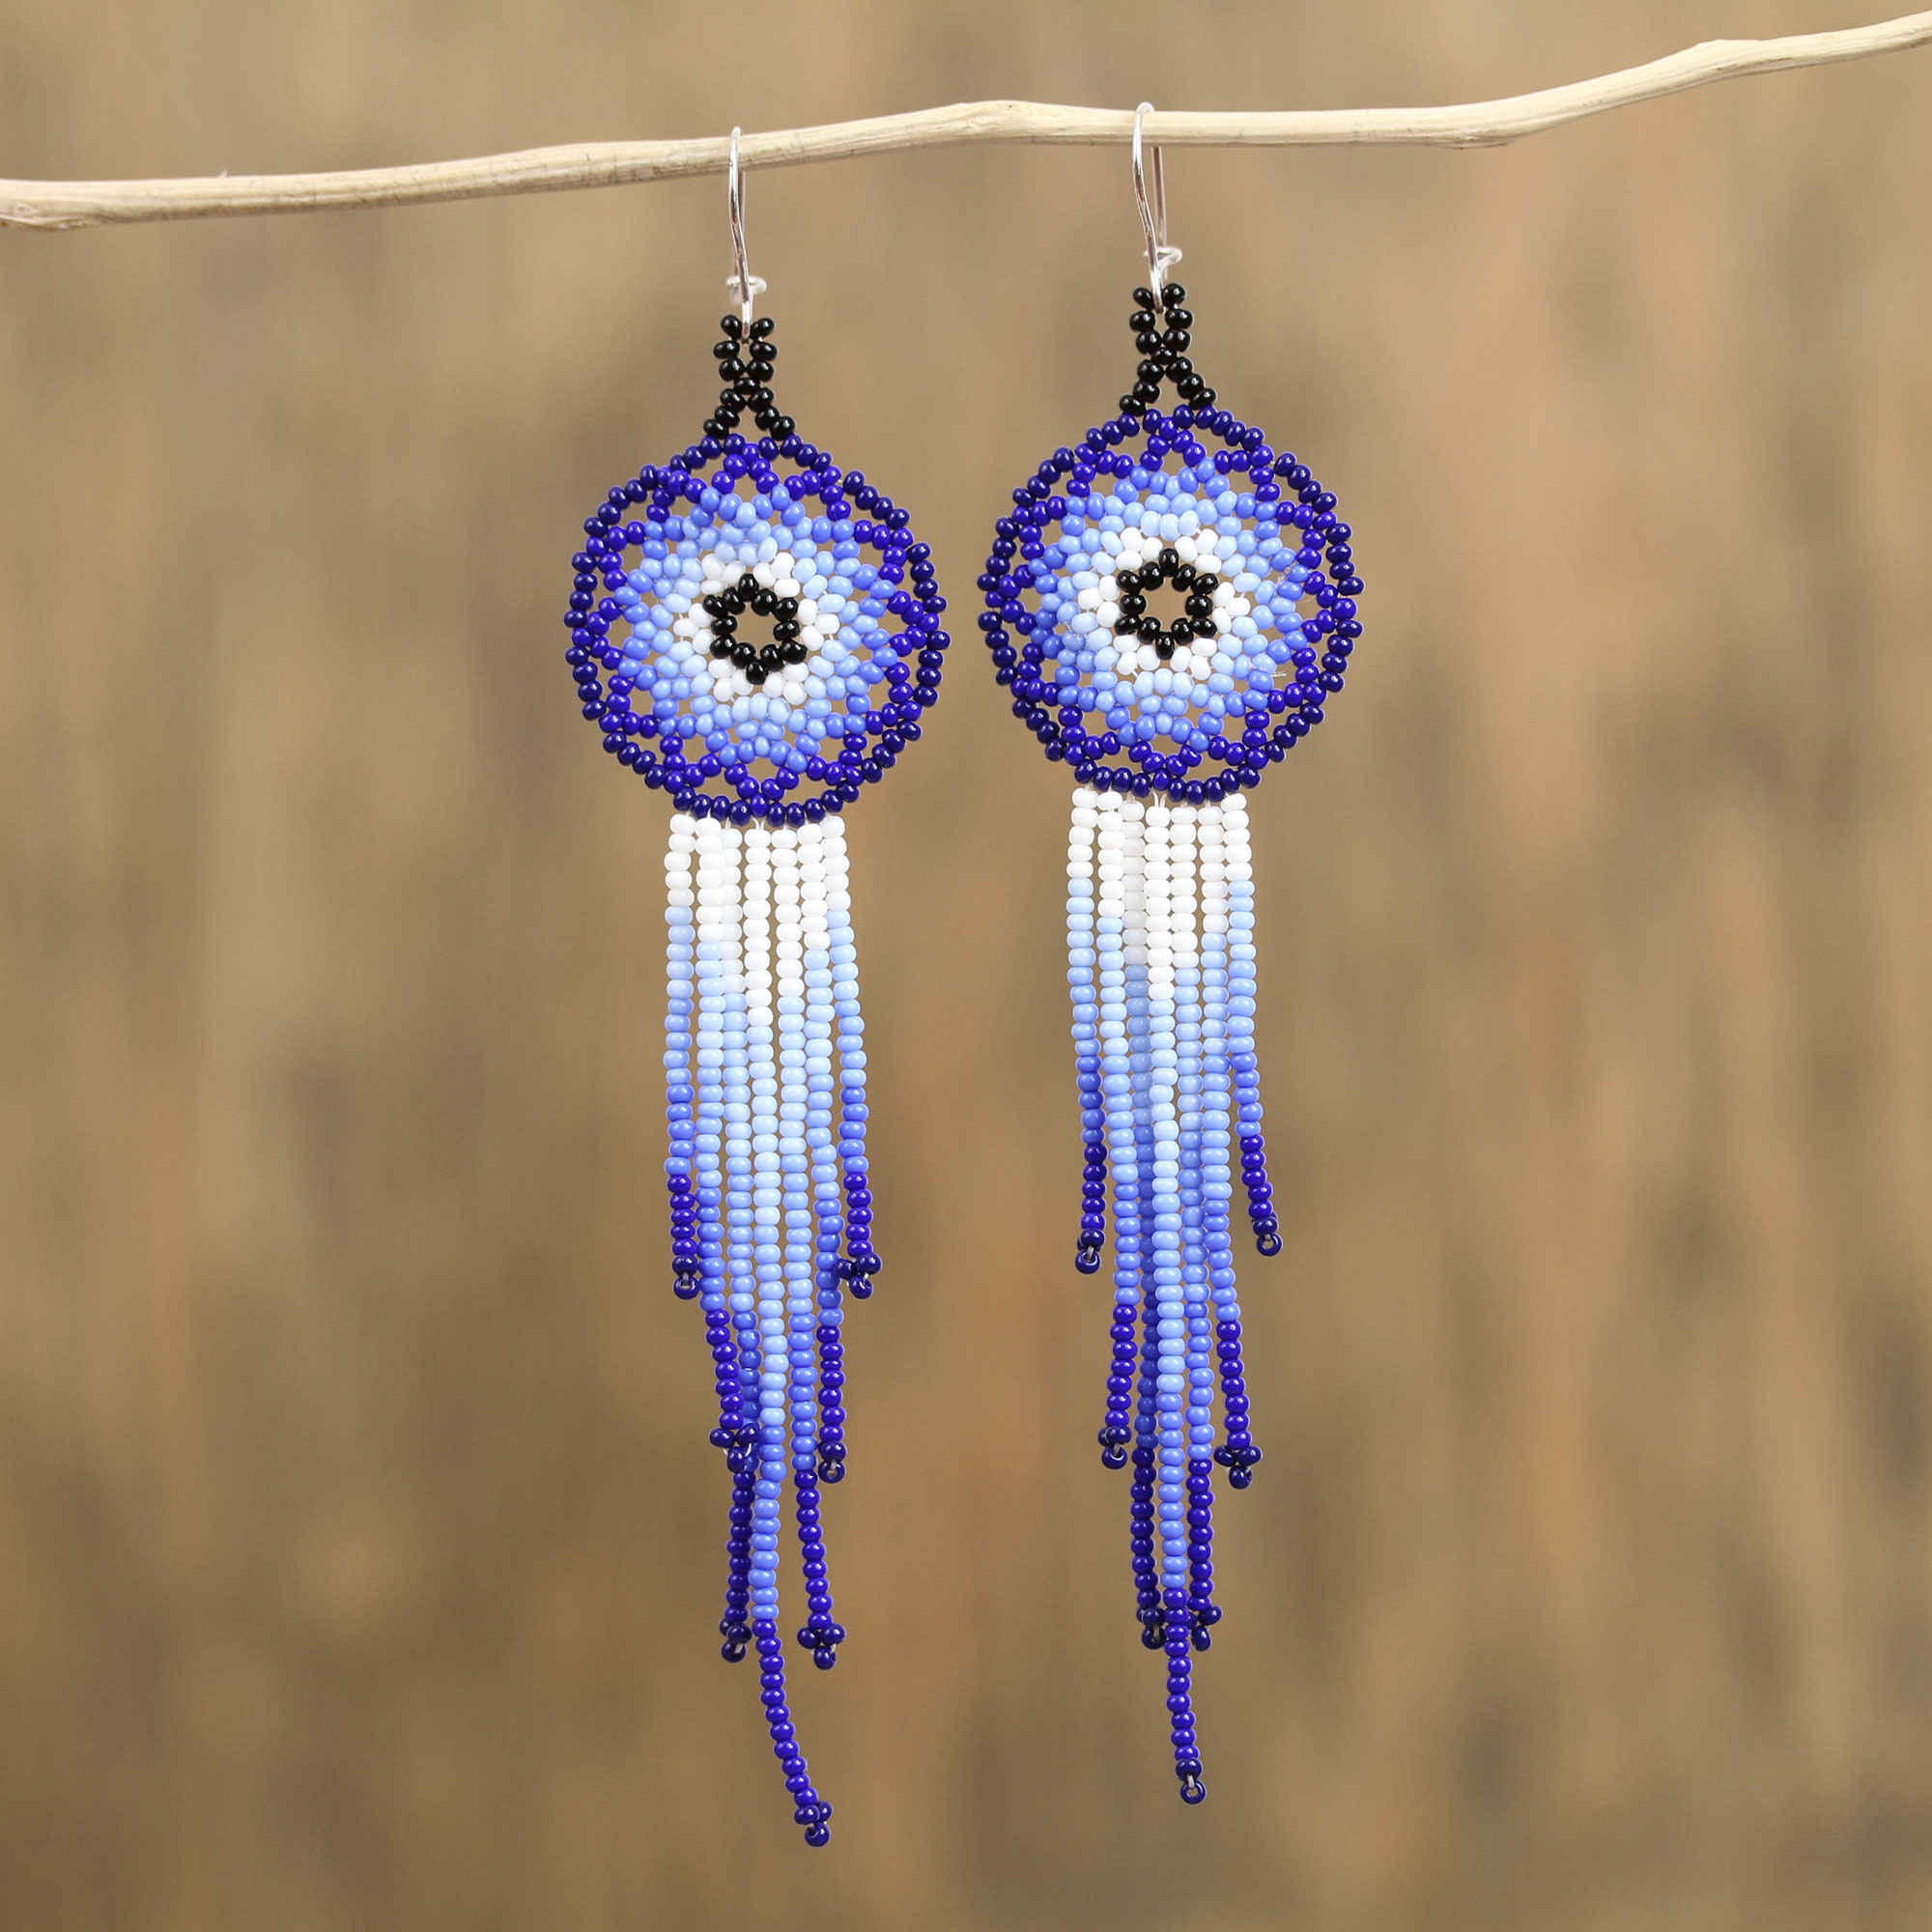 Beautiful blue earrings